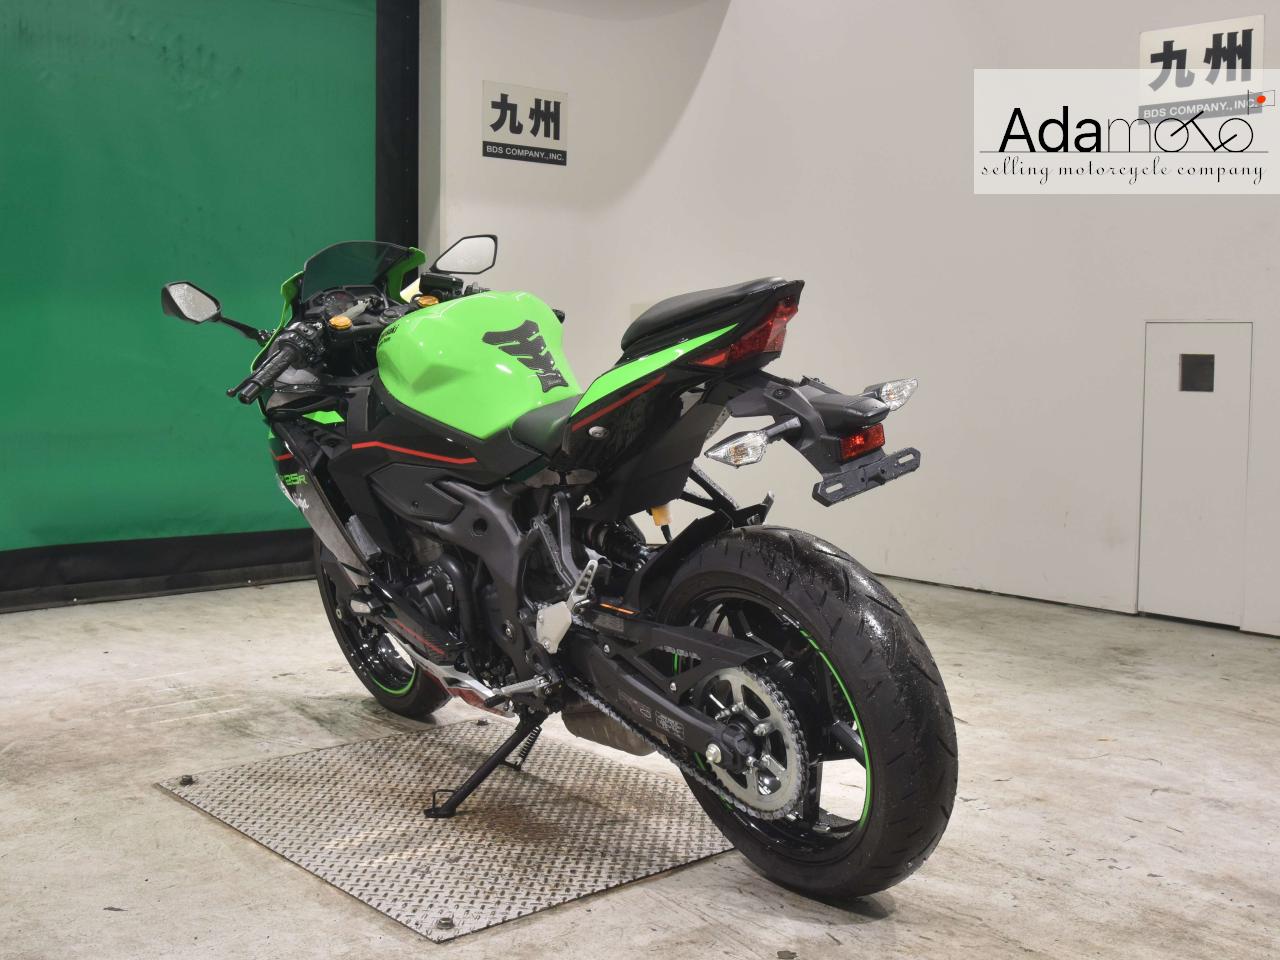 Kawasaki ZX-25R - Adamoto - Motorcycles from Japan